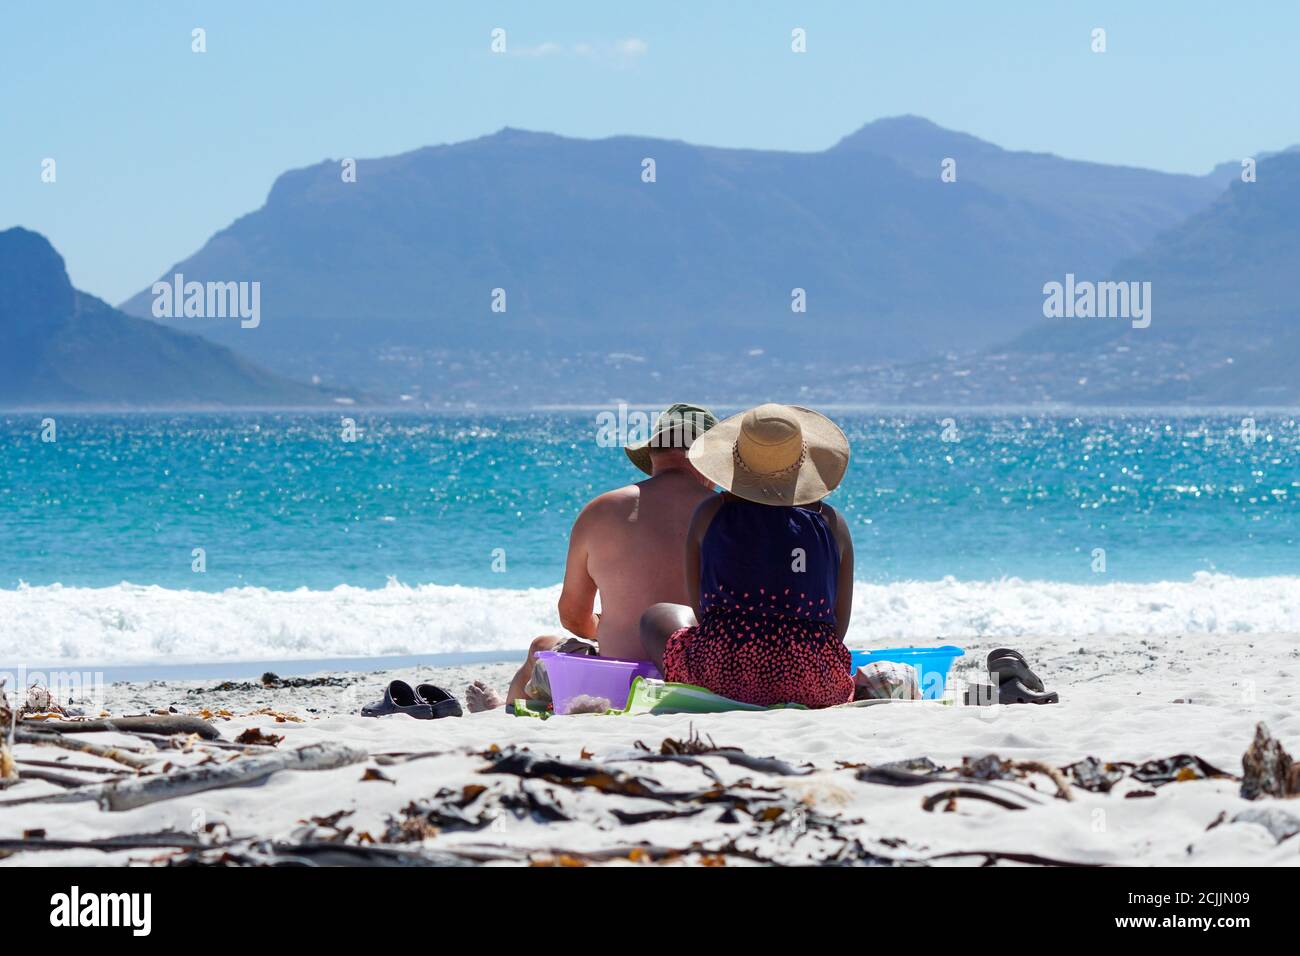 un couple, homme caucasien et femme noire, s'assoient ensemble sur le sable blanc de plage en regardant une vue sur l'océan bleu étincelant et le paysage de montagne Banque D'Images